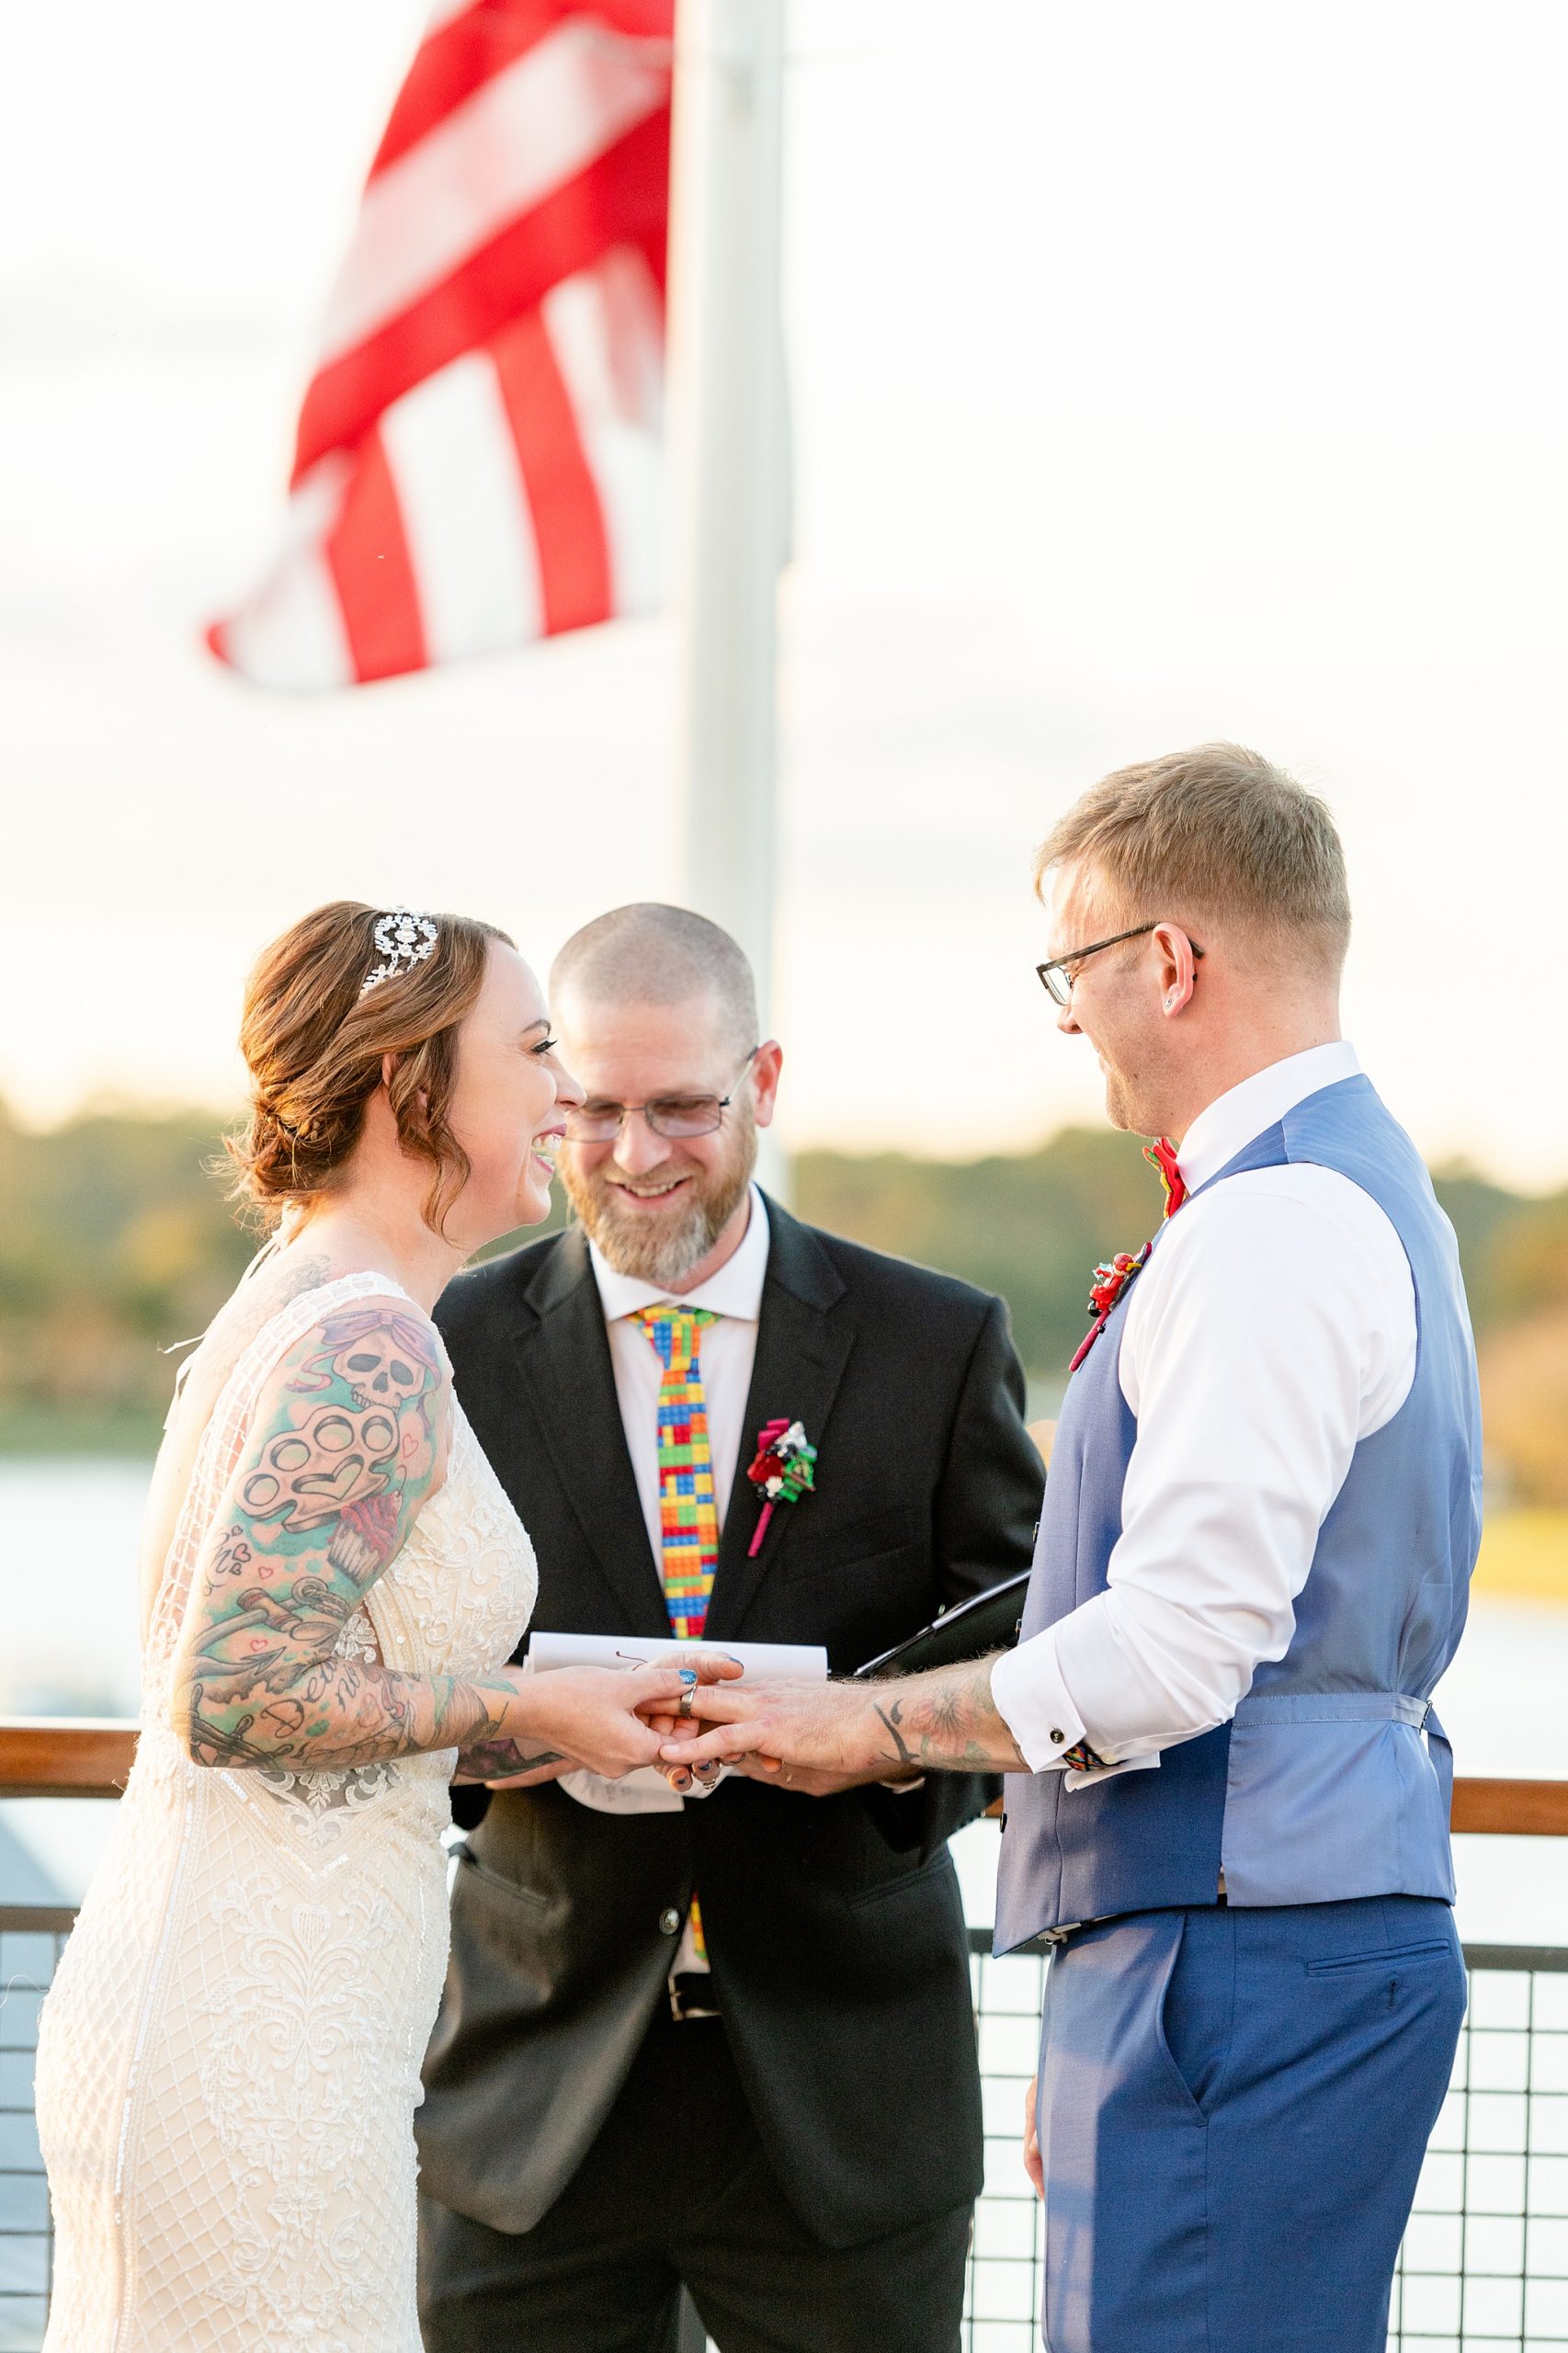 Exchanging Rings at Wedding | Orlando Wedding P